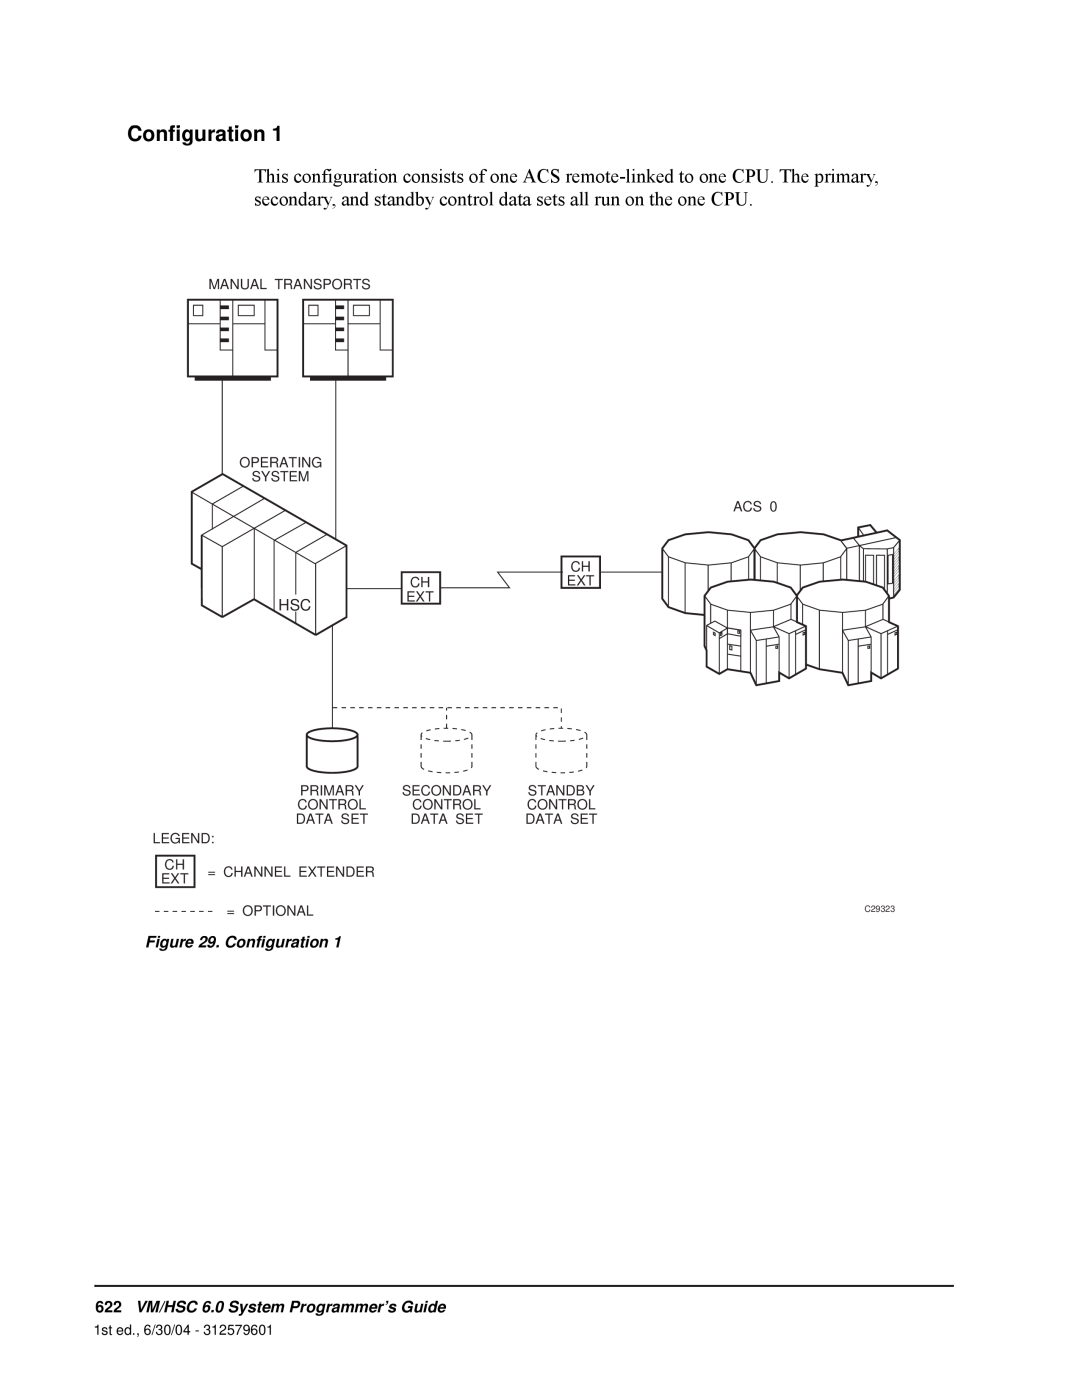 StorageTek manual Configuration, 622VM/HSC 6.0 System Programmer’s Guide 